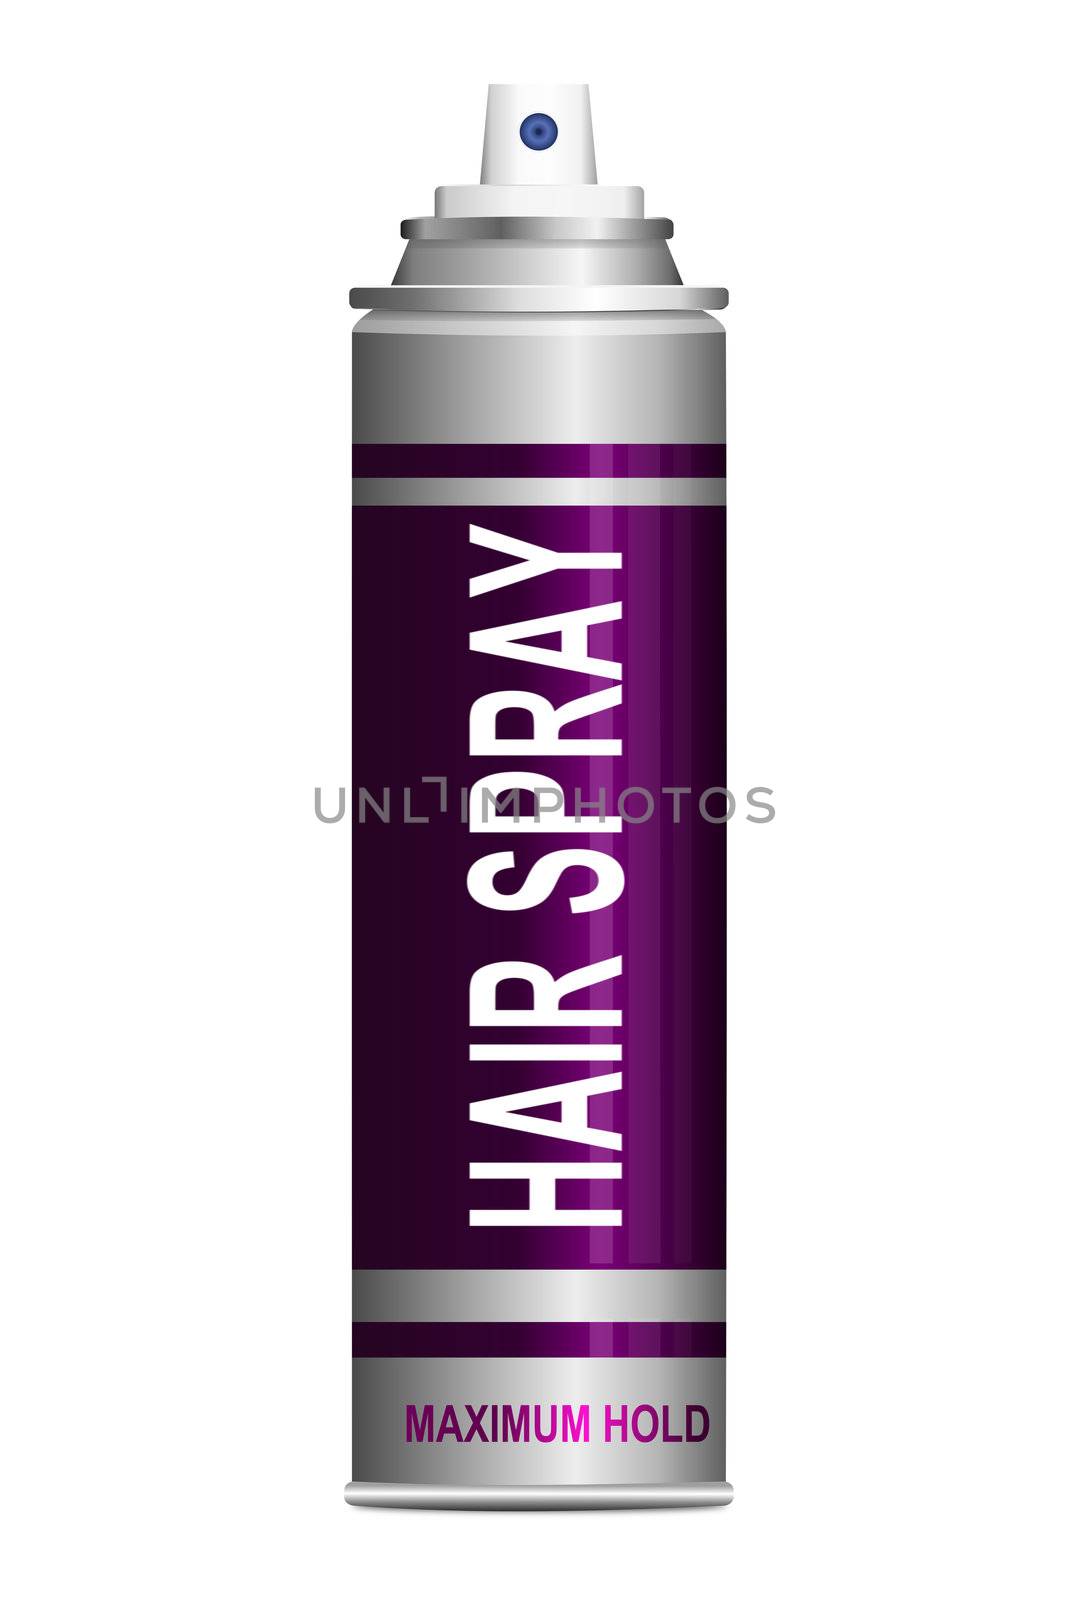 Hairspray. by 72soul